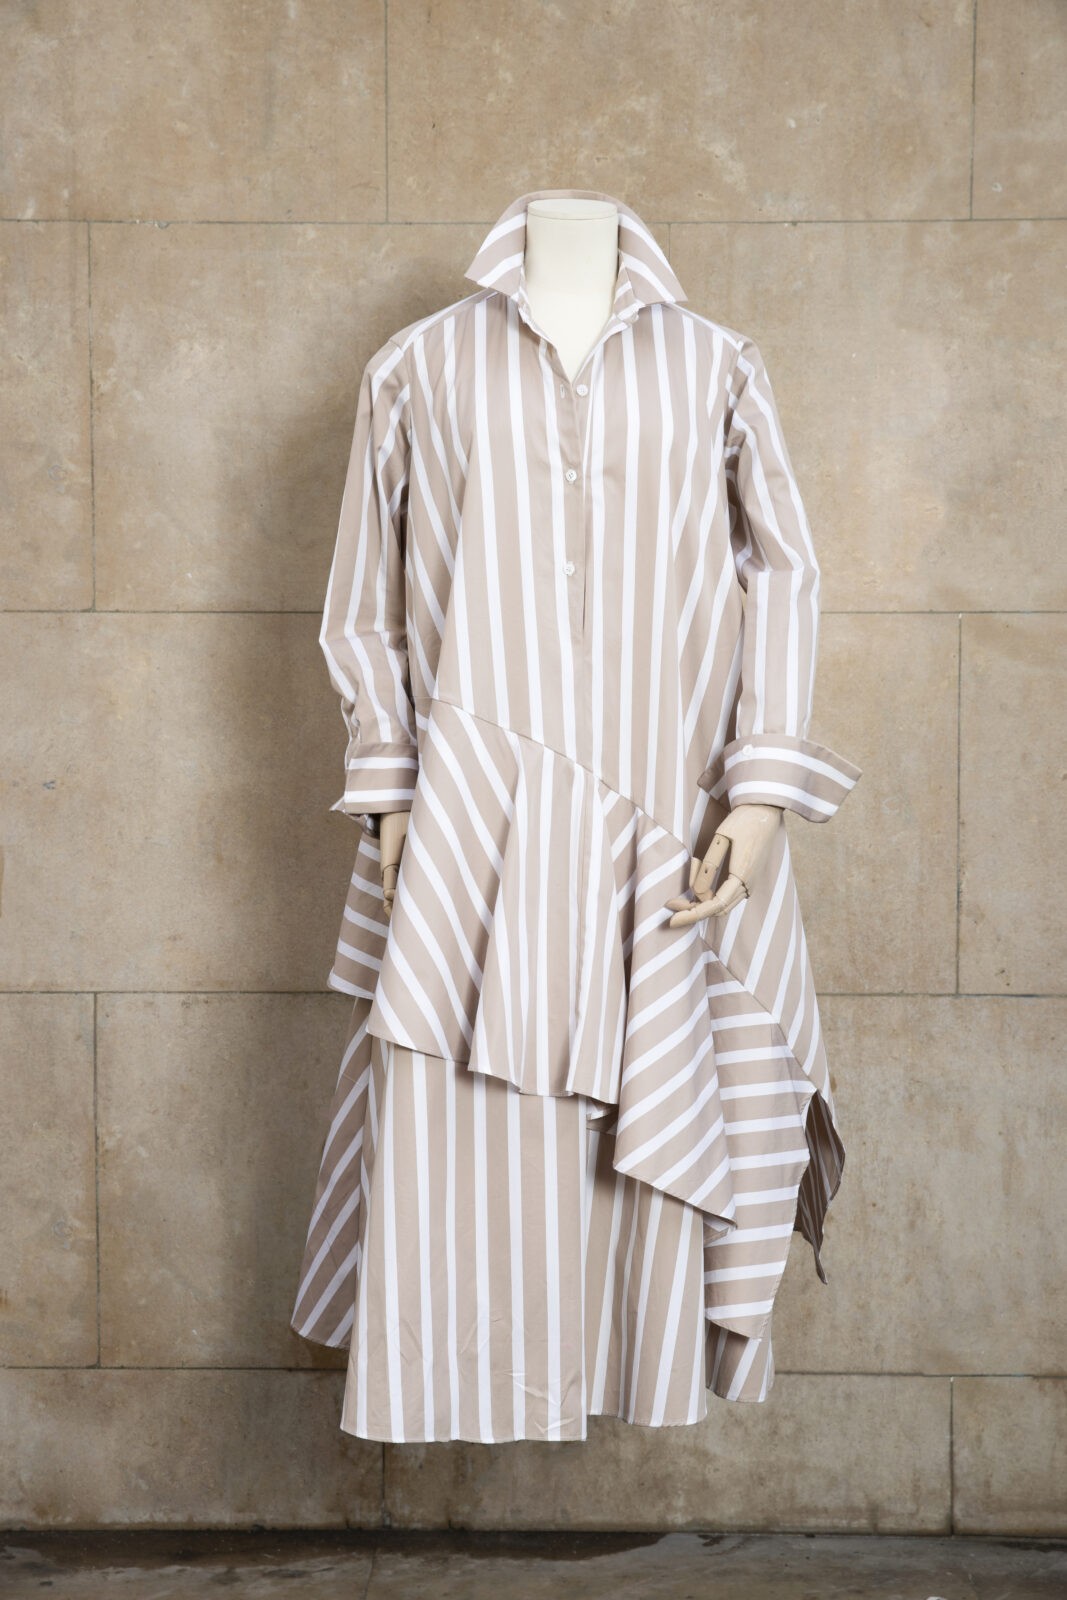 Découvrez Stella, une robe longue à empiècement asymétrique, imaginée et conçue par les deux designers Michele Emanuele et Veronica Marucci au sein de leur parisien. D'autres coloris sont disponibles sur demande par email.